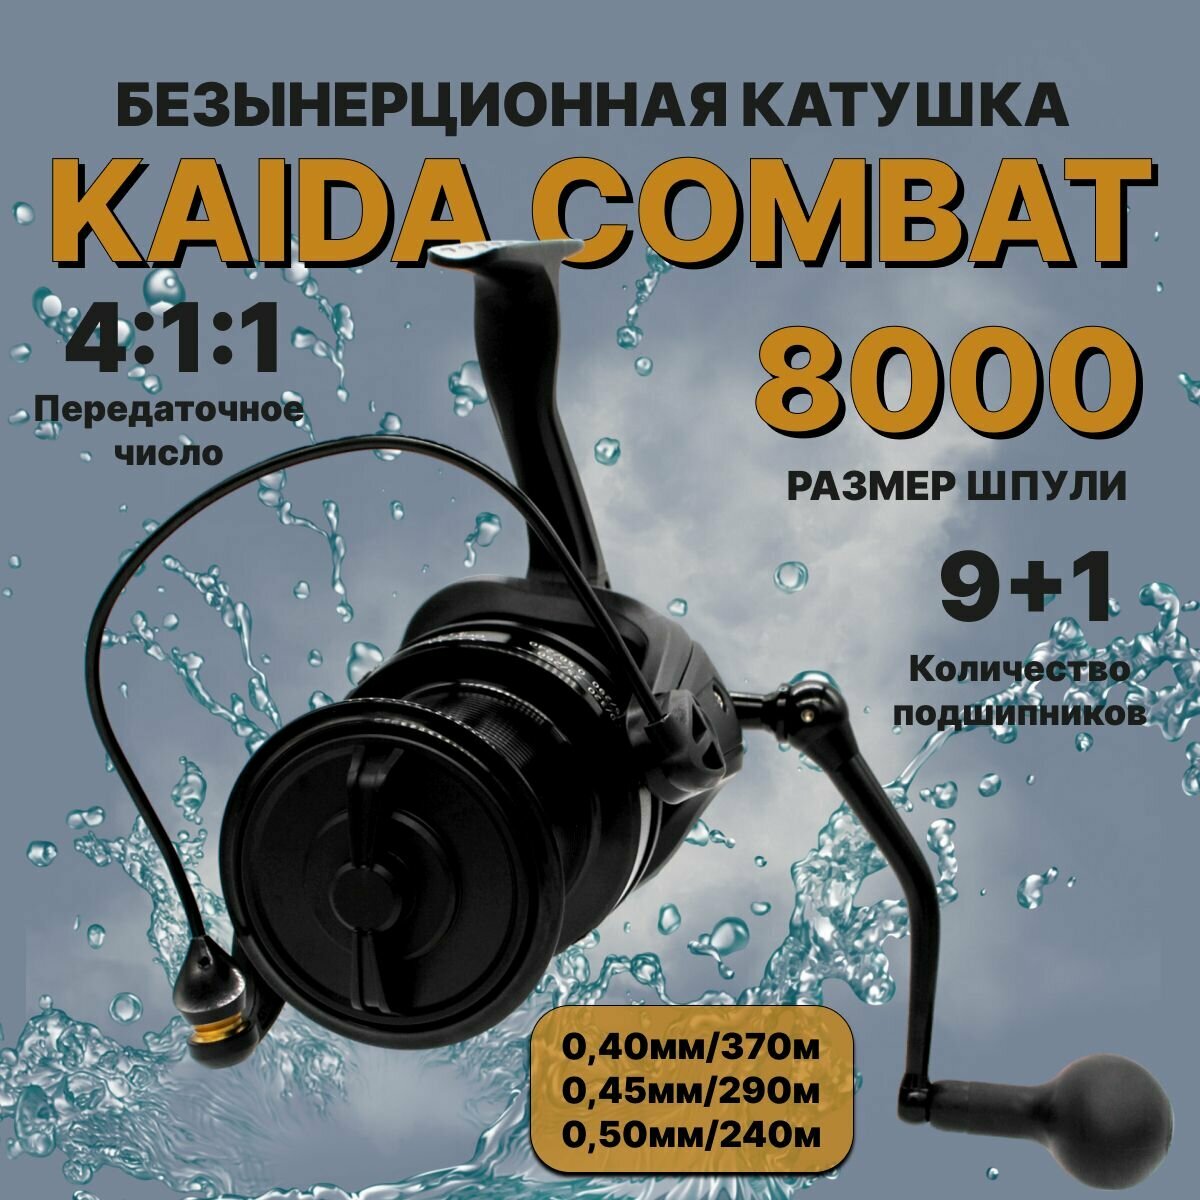 Катушка для рыбалки карповая Kaida Combat 8000